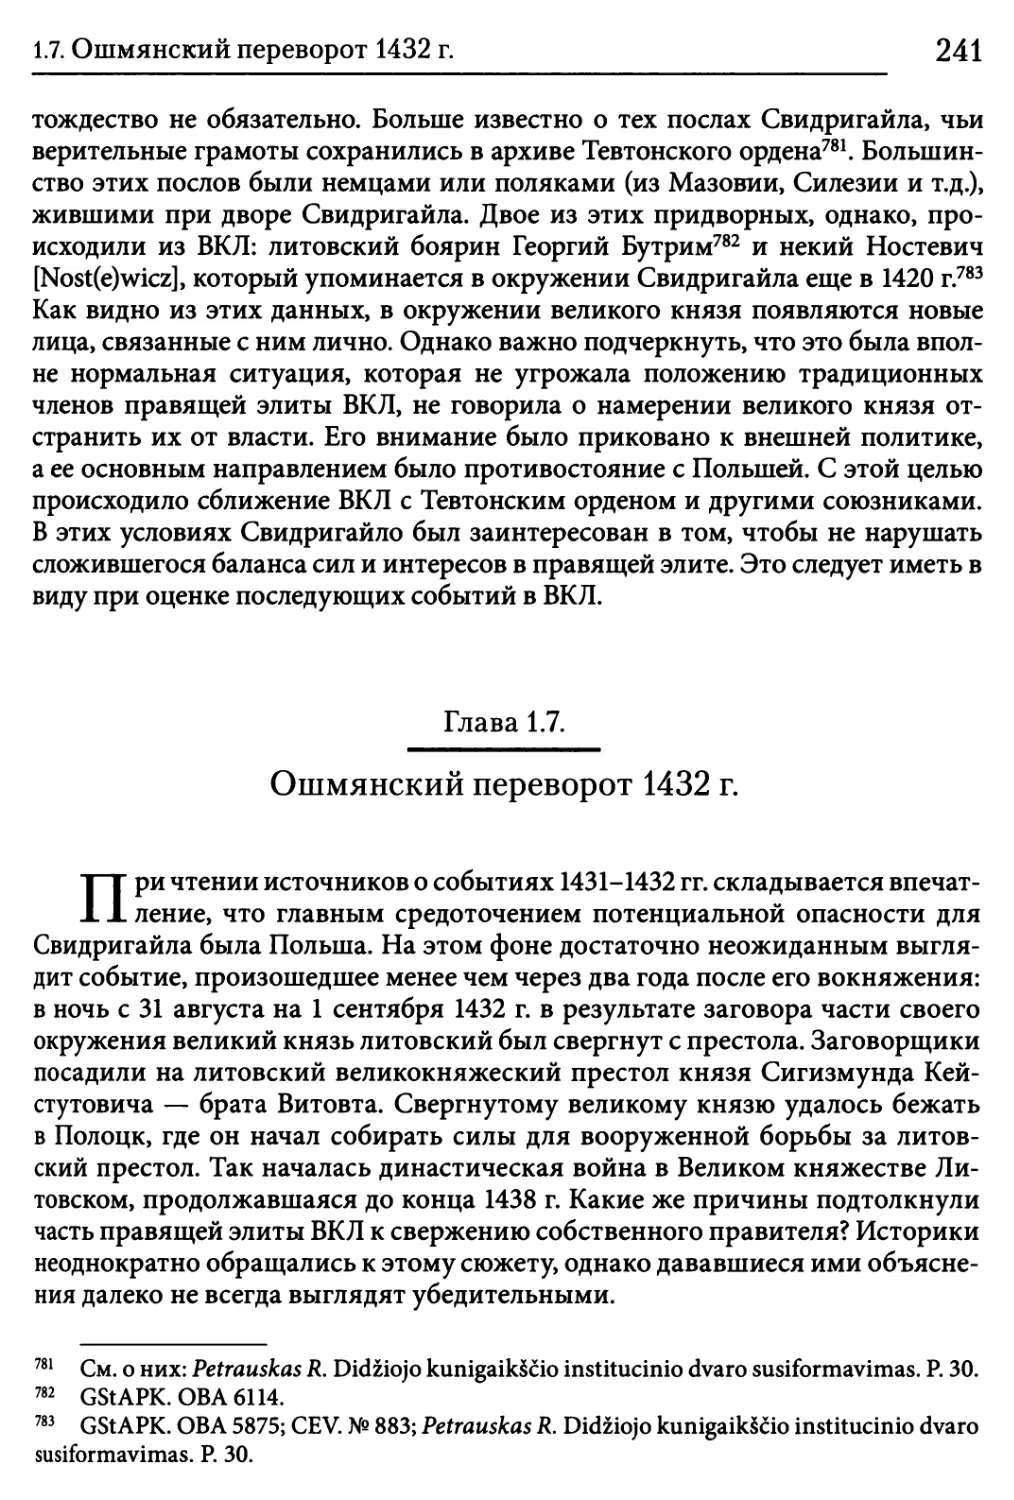 Глава 1.7. Ошмянский переворот 1432 г.